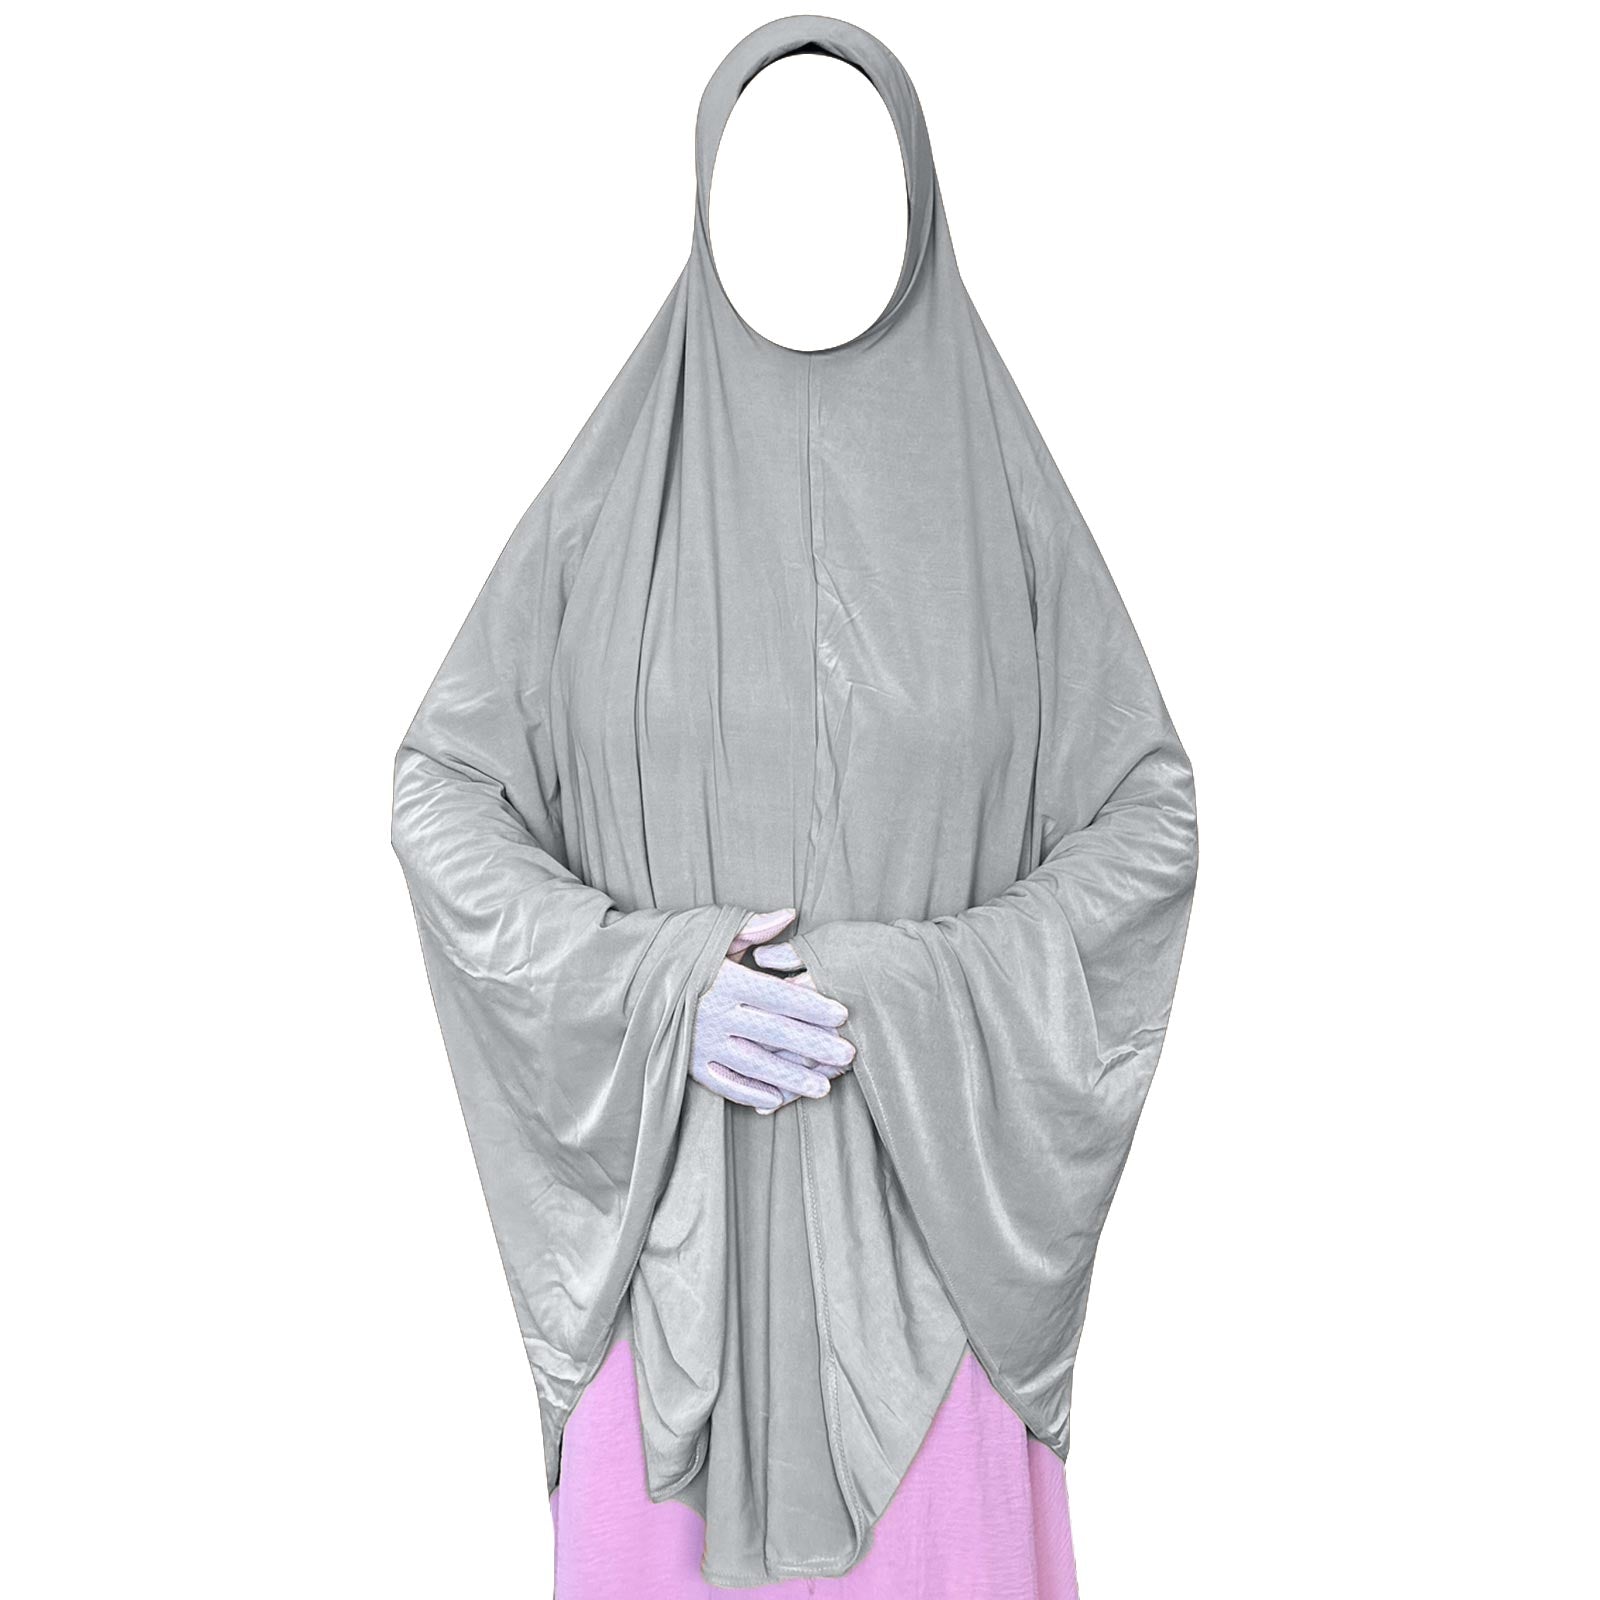 ready to wear prayer hijab for muslim women